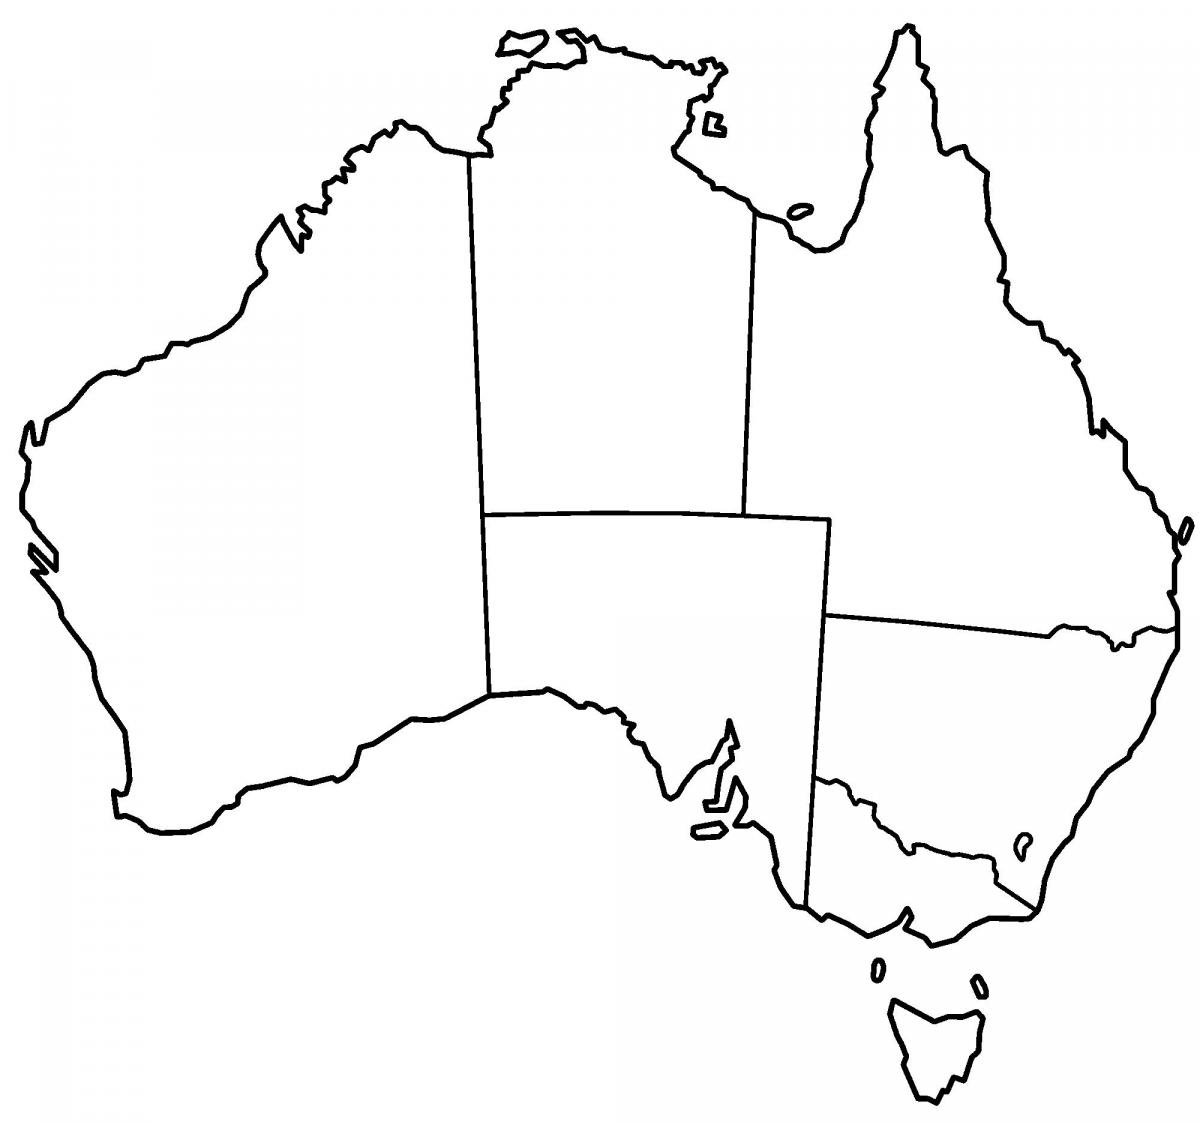 Lege Australische kaart